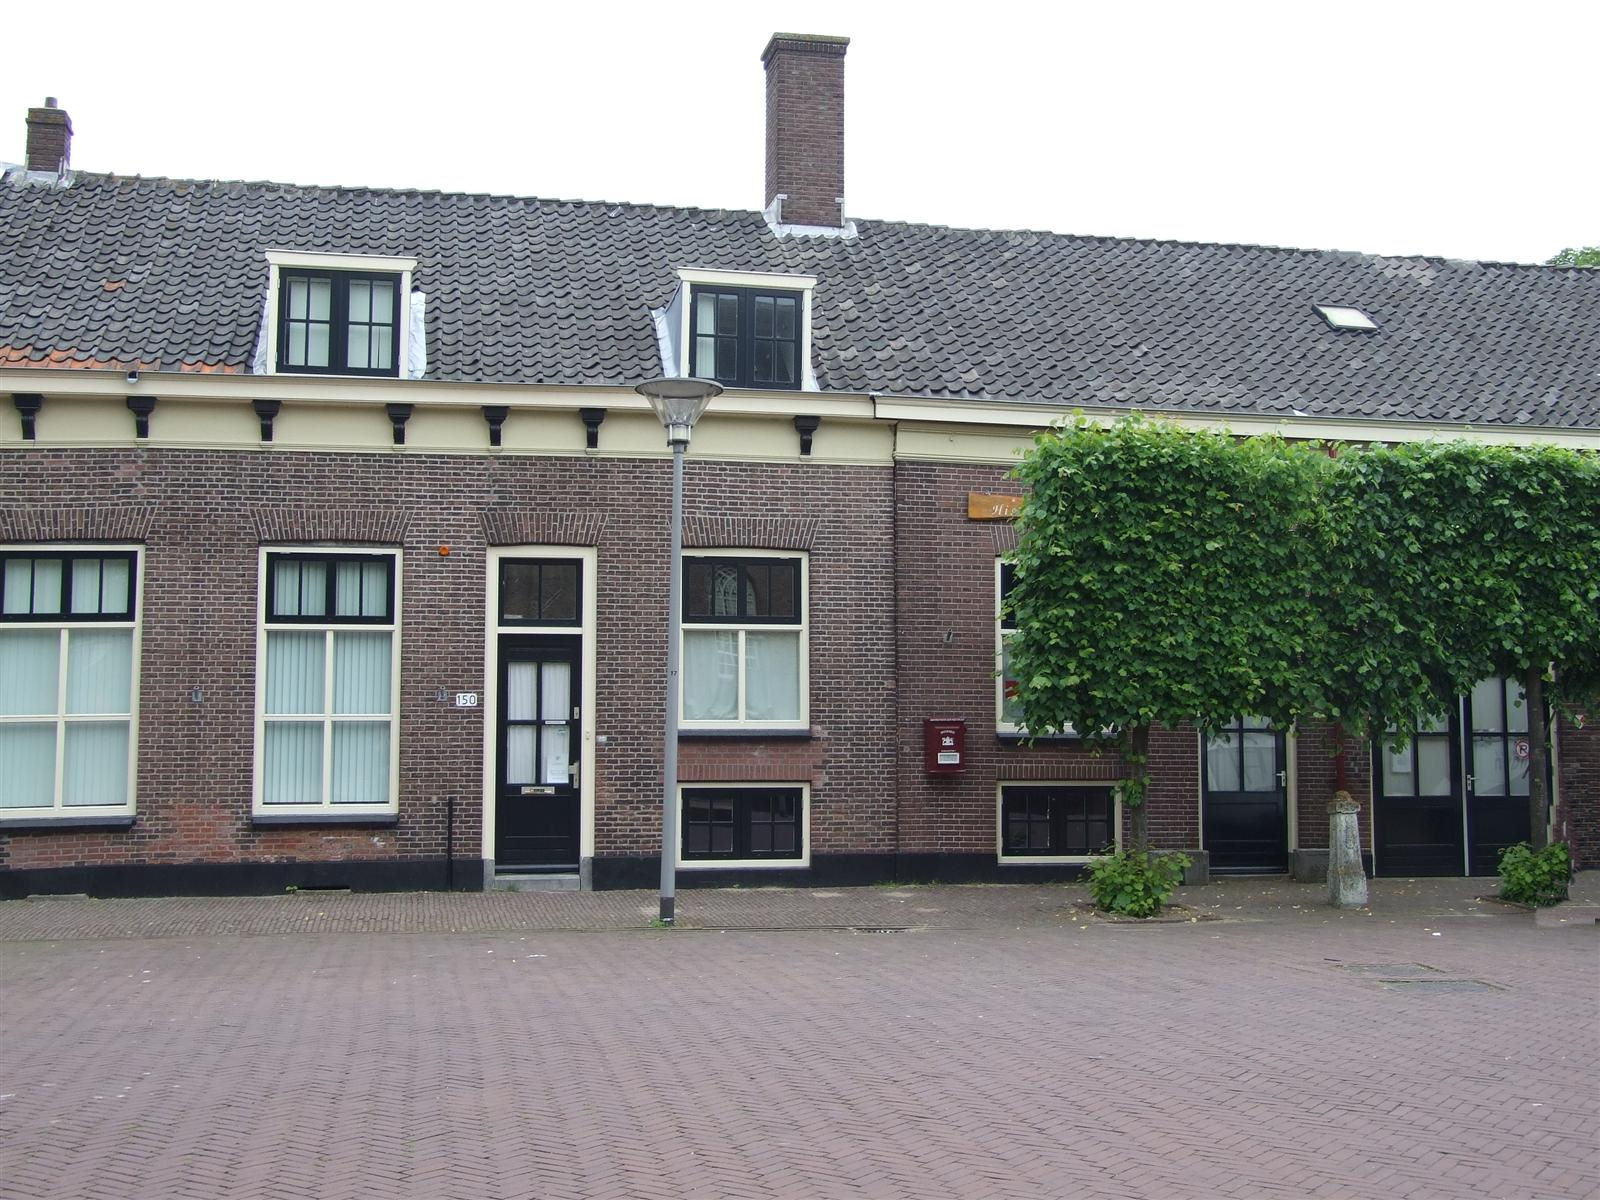 D'Ouwe School (2010)